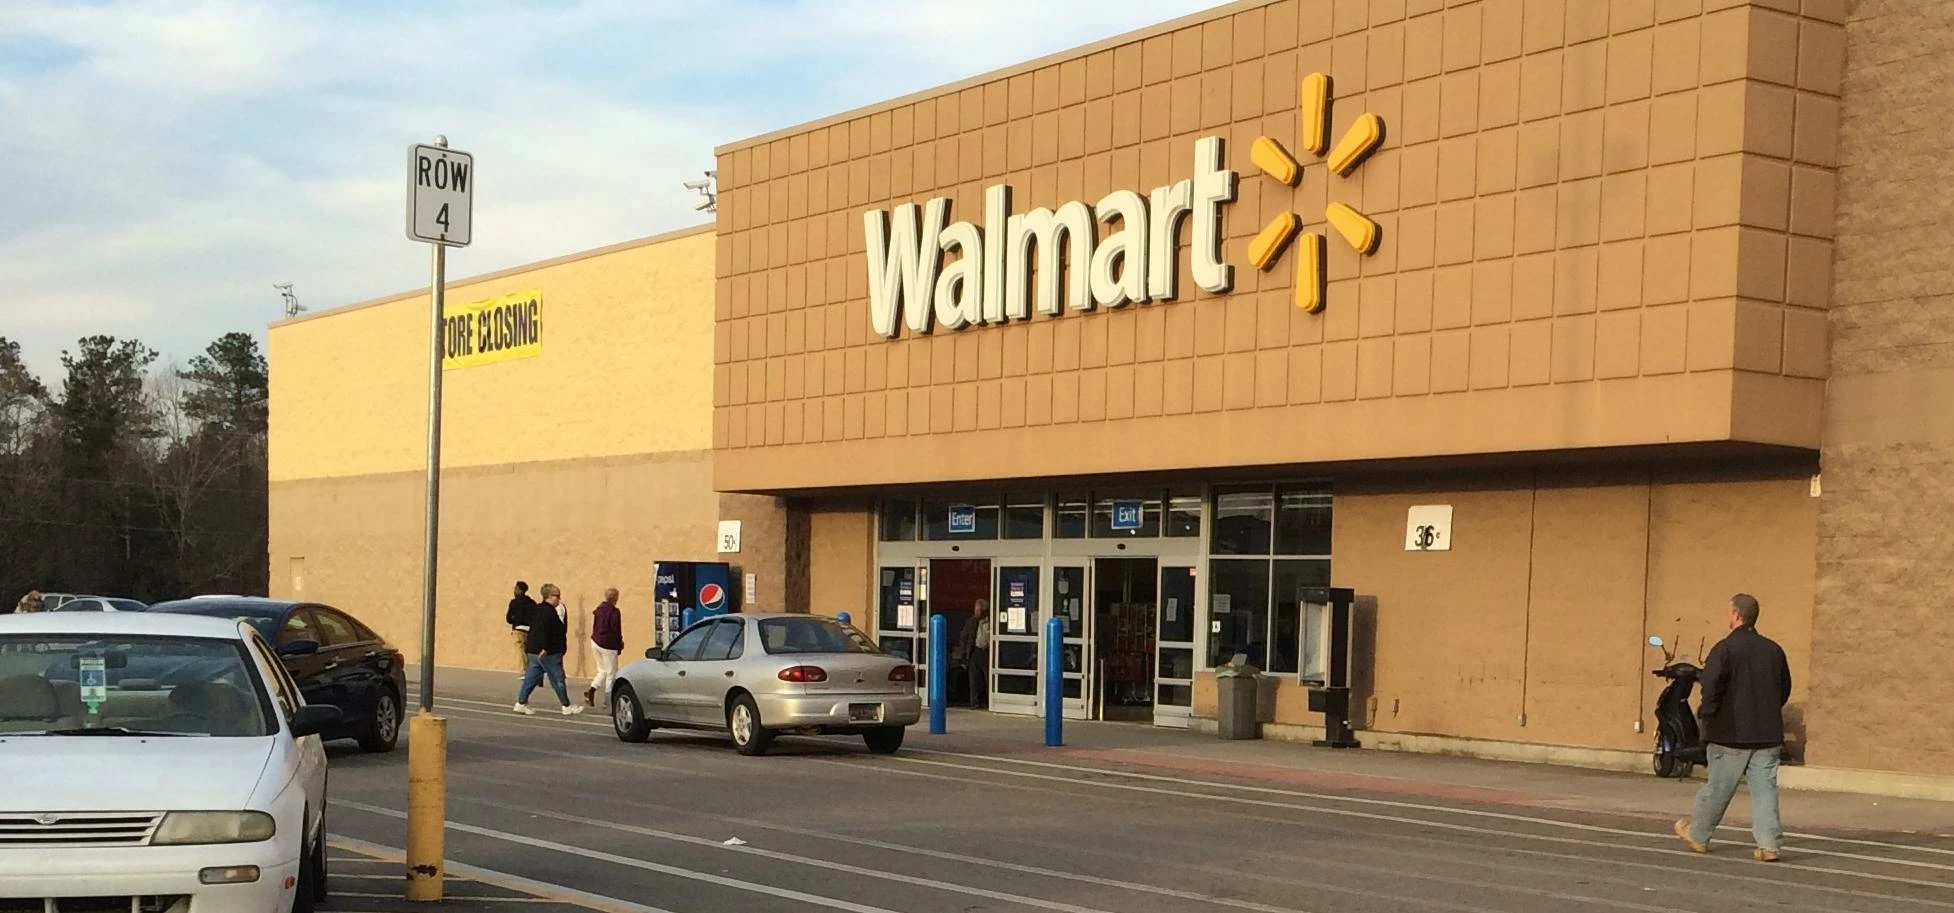 Wal-Mart Winnsboro, SC January 2016